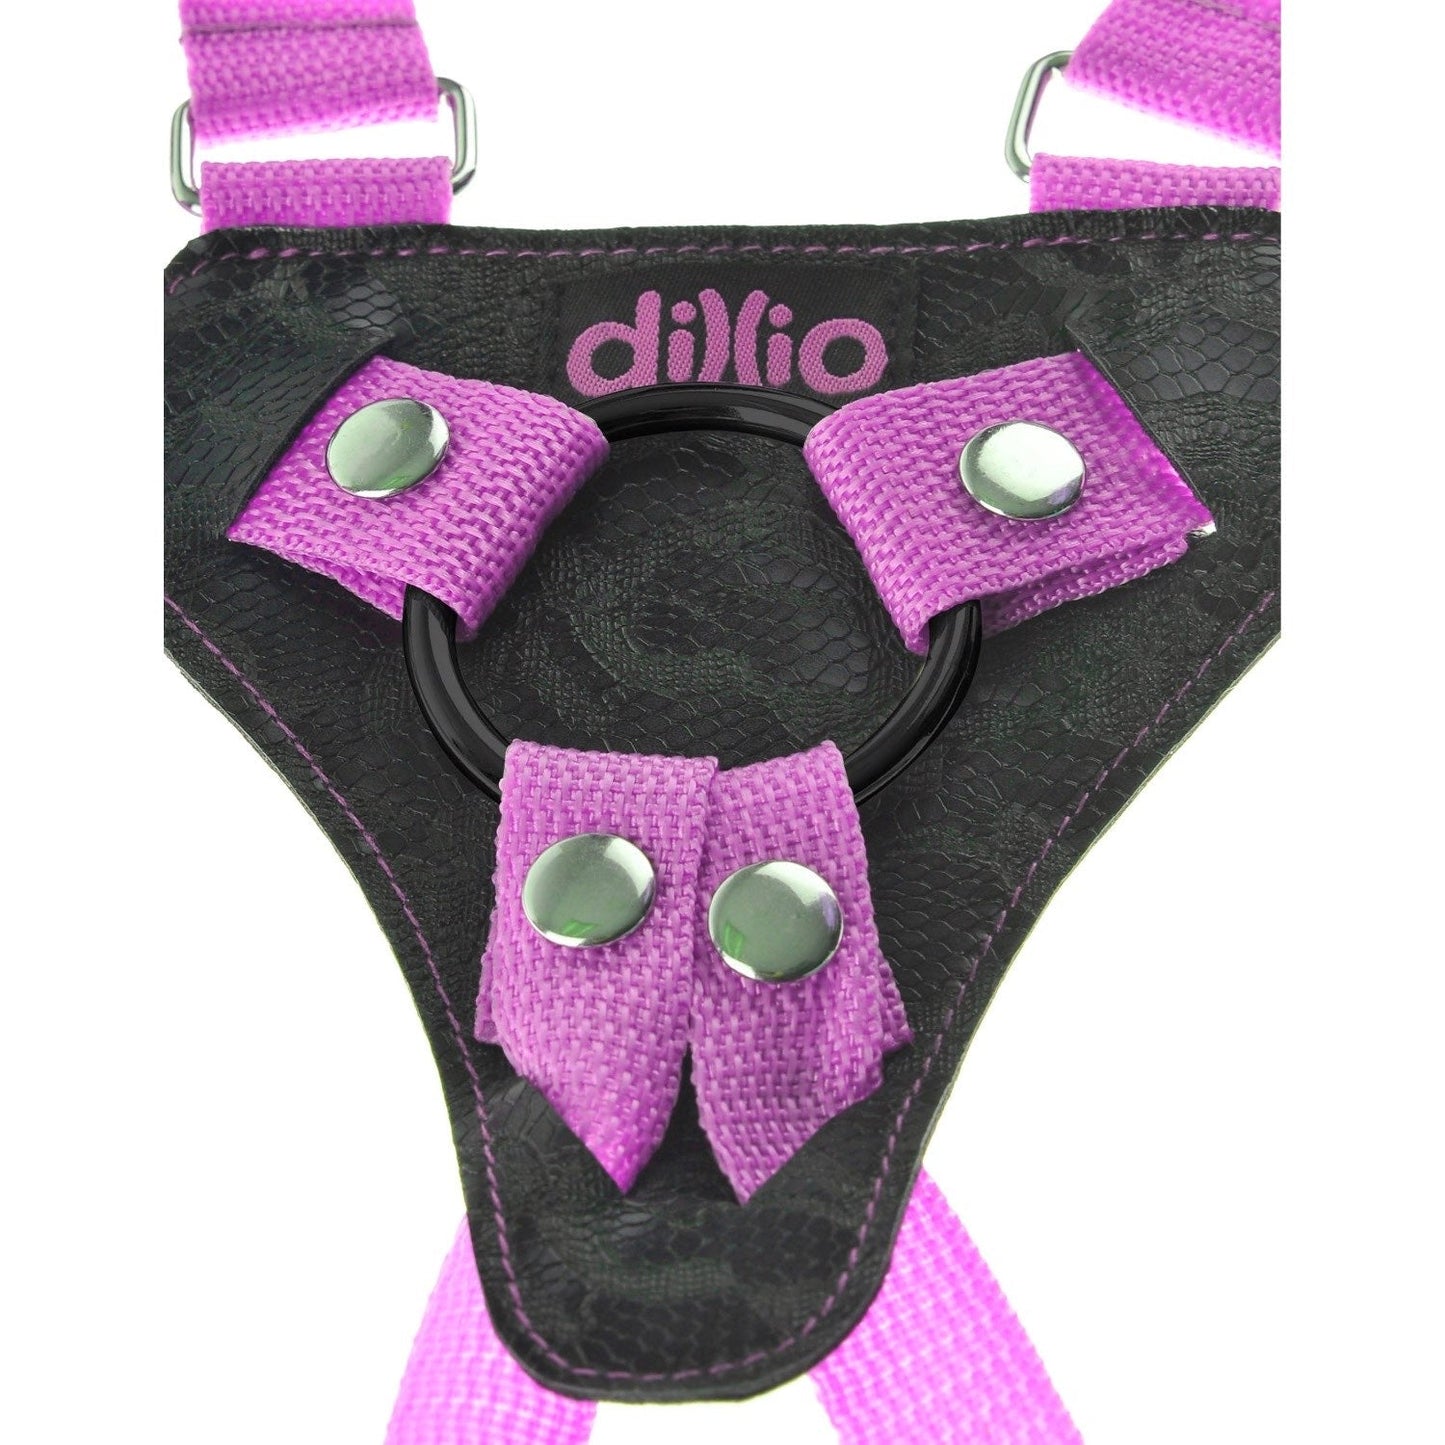 7 英寸绑带式吊带套装 - 粉色 17.8 厘米绑式带吊带